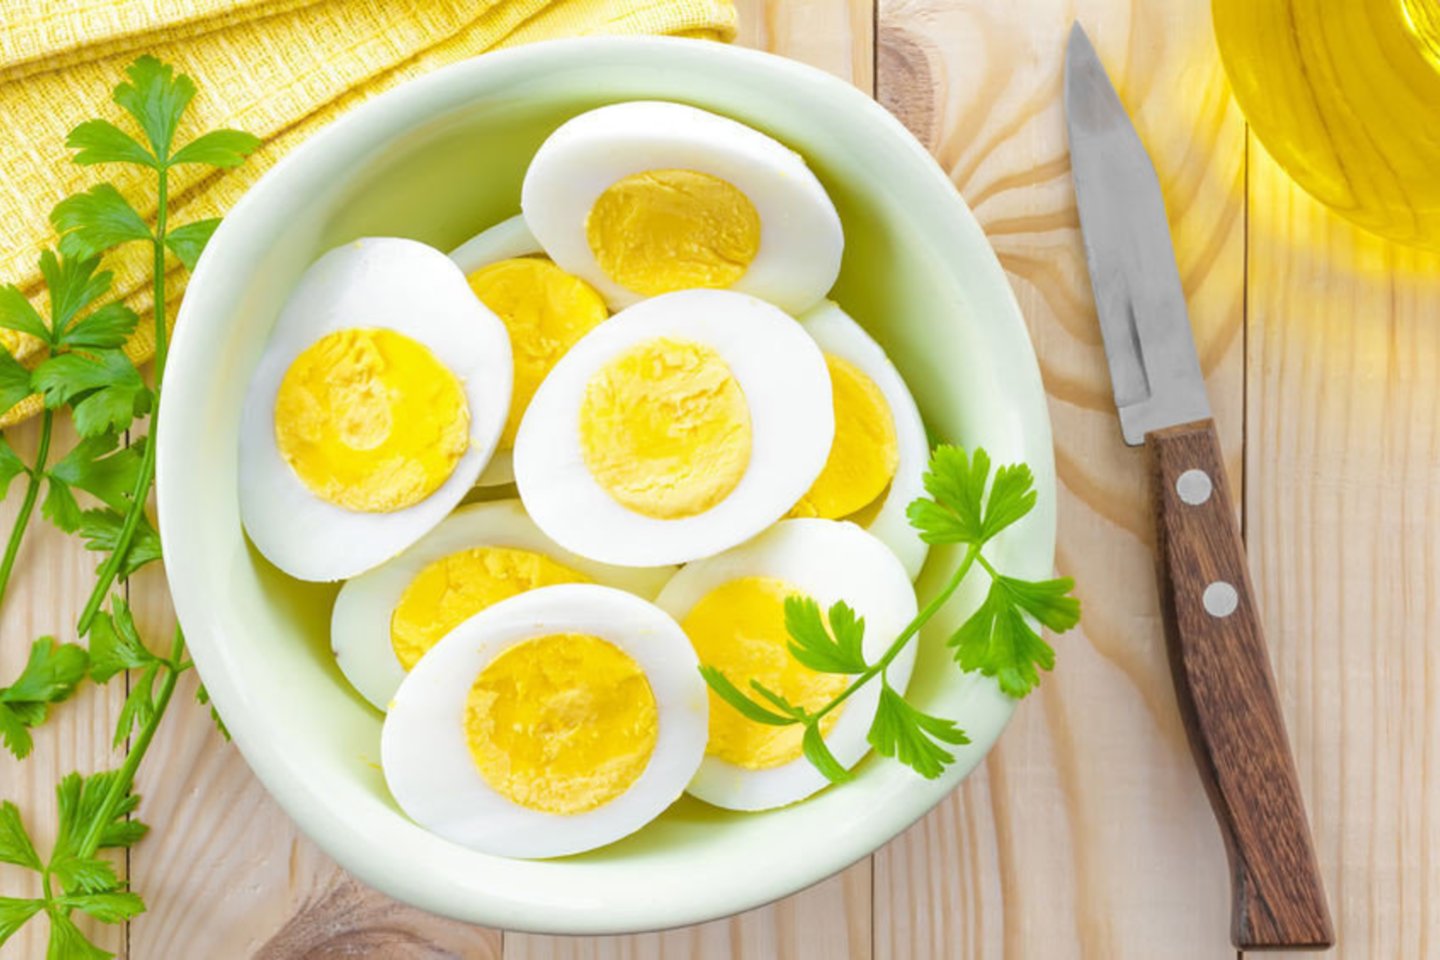 Kaip virti kiaušiniai jums skaniausi?<br>123rf nuotr.